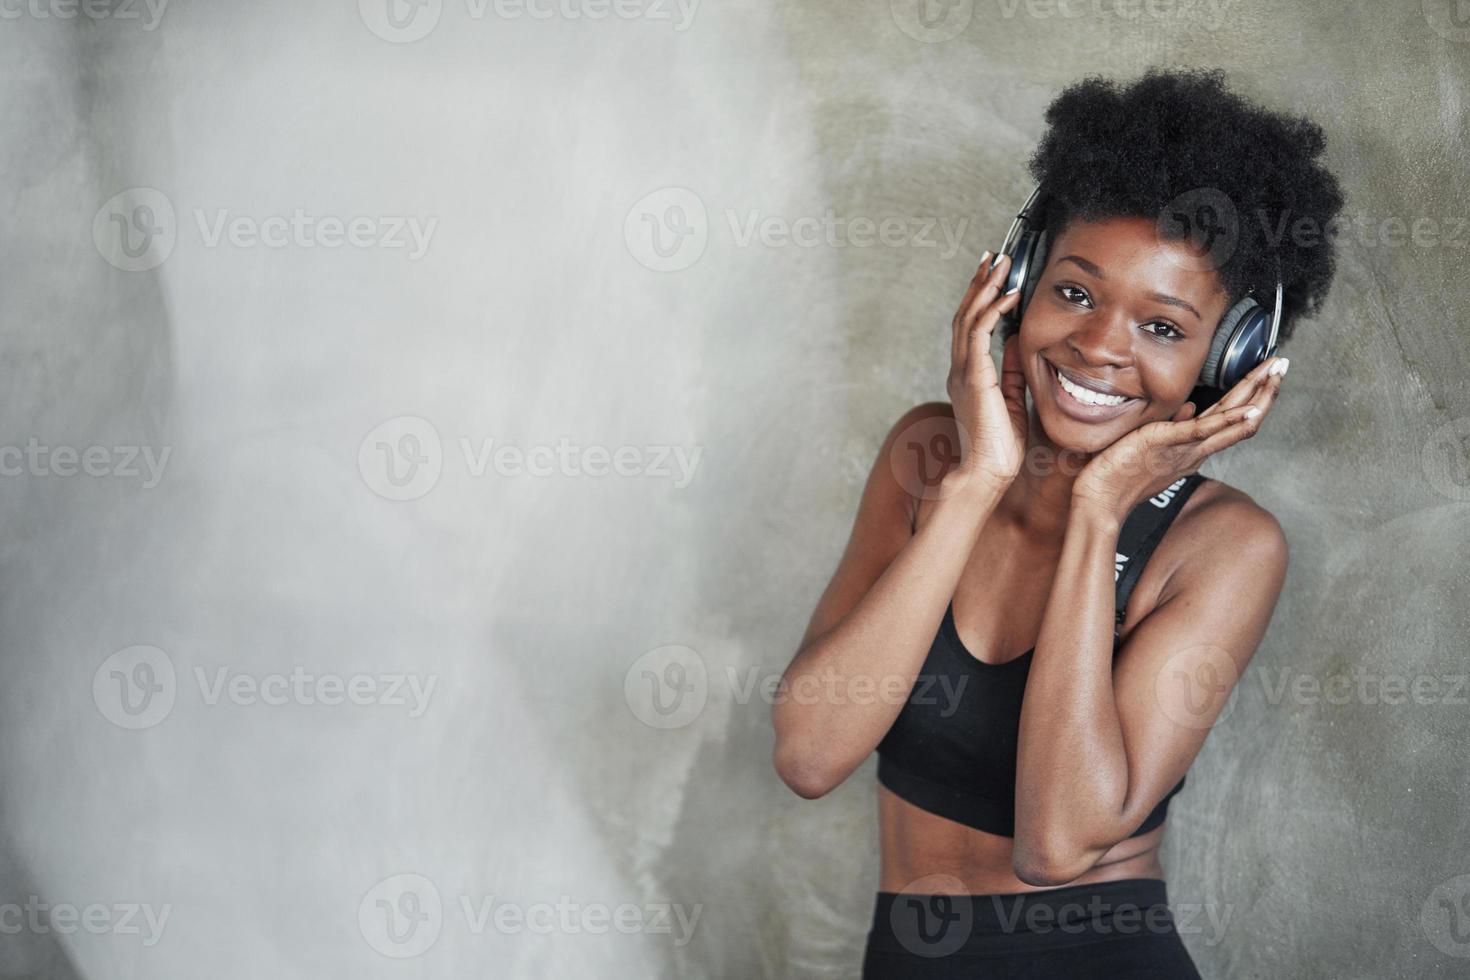 guardando nella telecamera. ritratto di ragazza afroamericana in abiti fitness che ha una pausa dopo l'allenamento foto